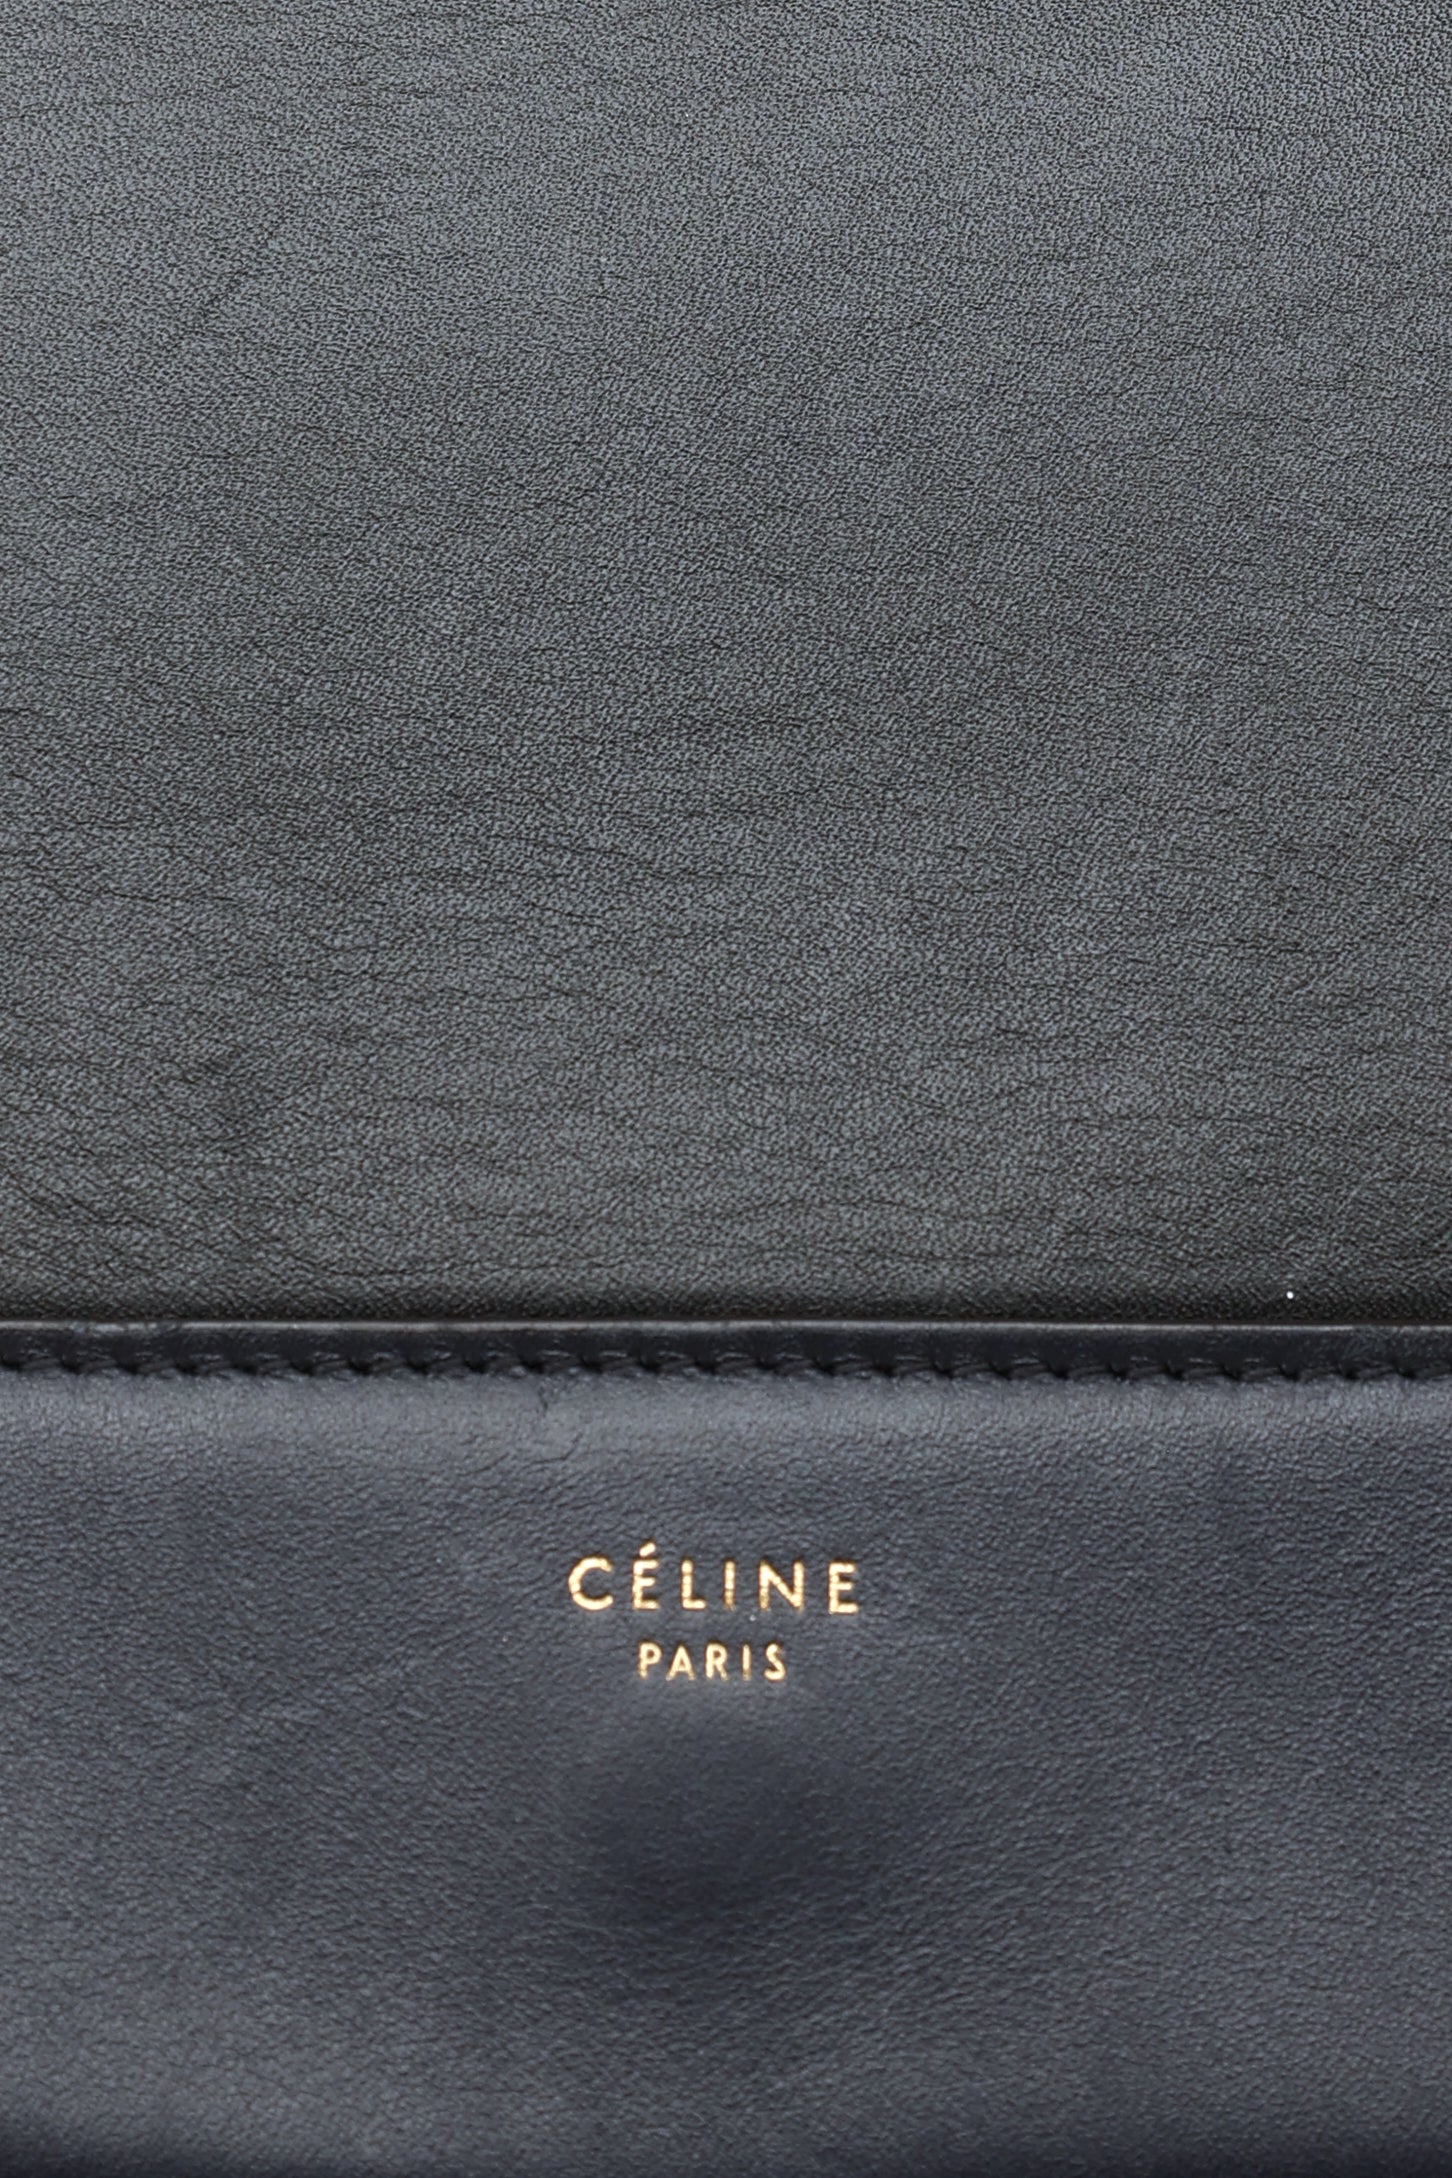 Vintage Celine By Michael Kors Black Frame Bag – For the Ages